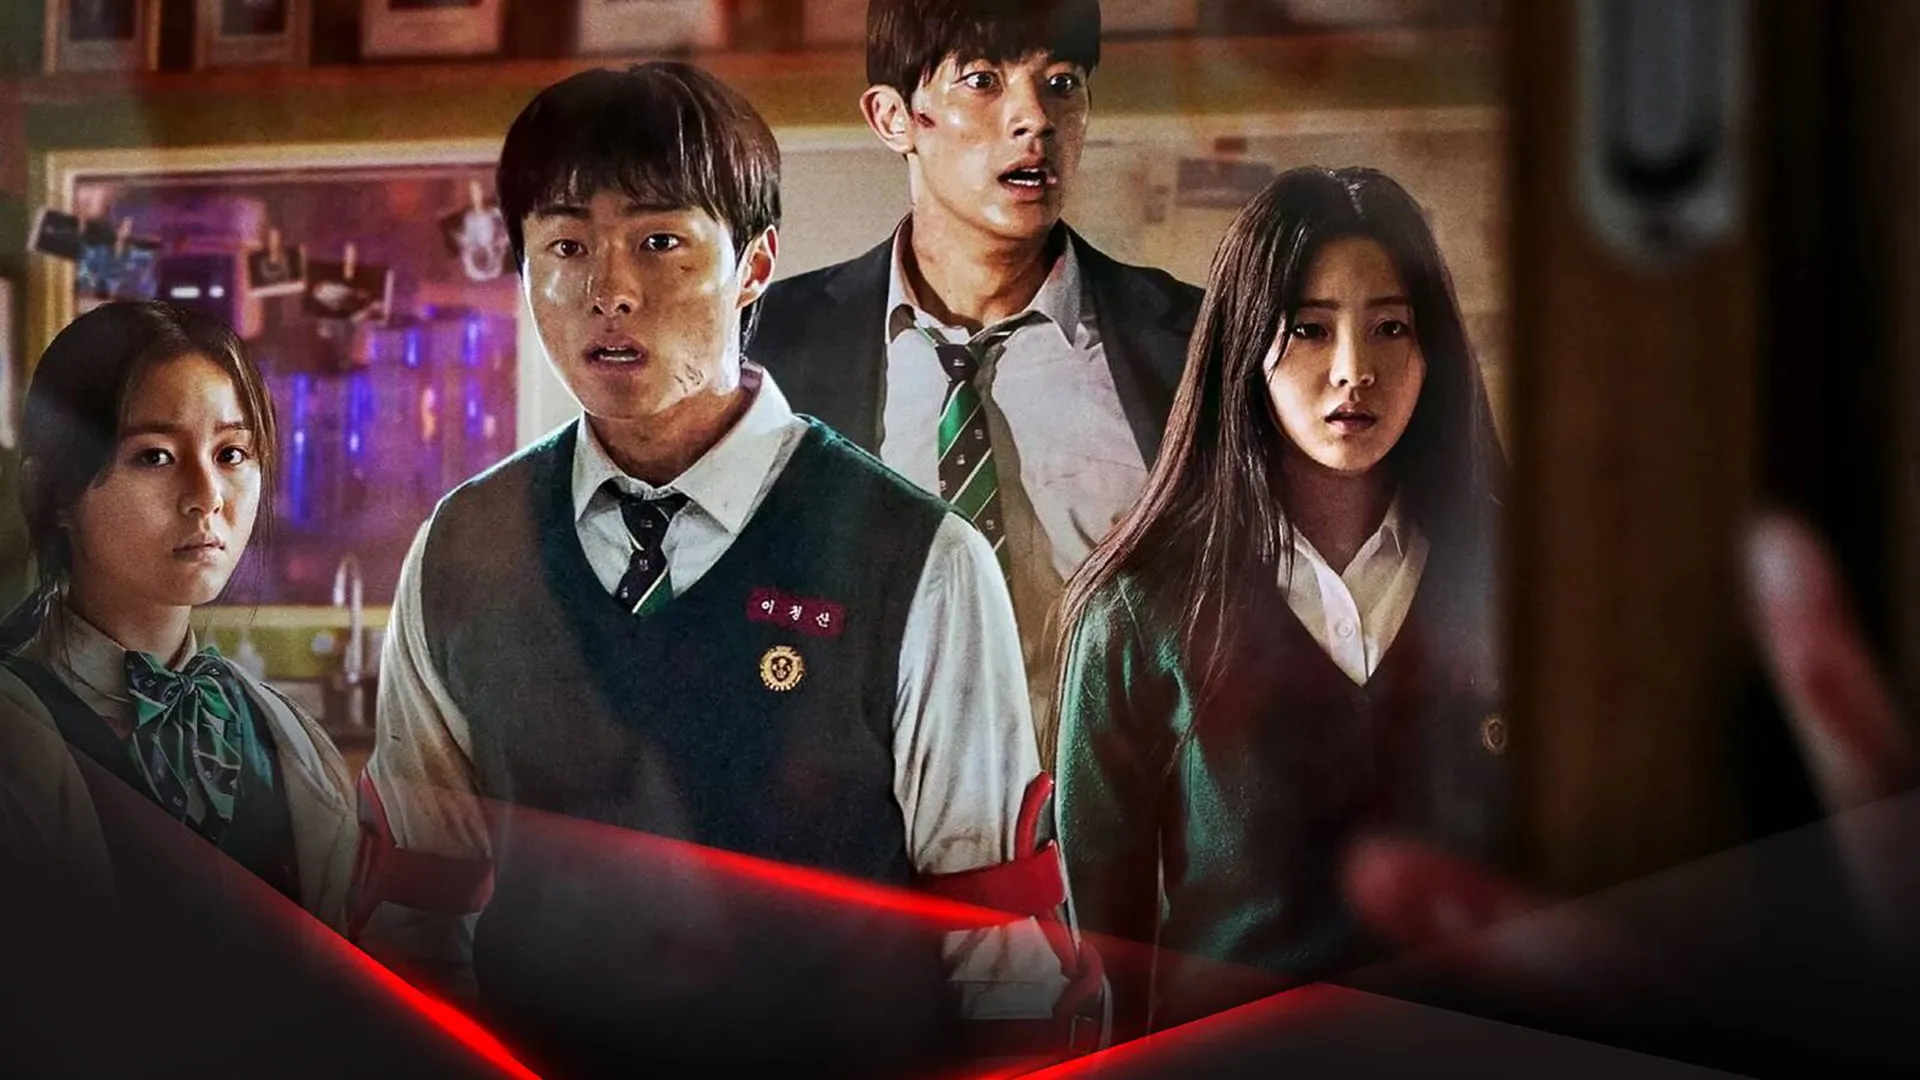 Корейцы снова вскрыли социальный нарыв. «Мы все мертвы» от Netflix взорвал чарты, несмотря на банальный зомби-сюжет